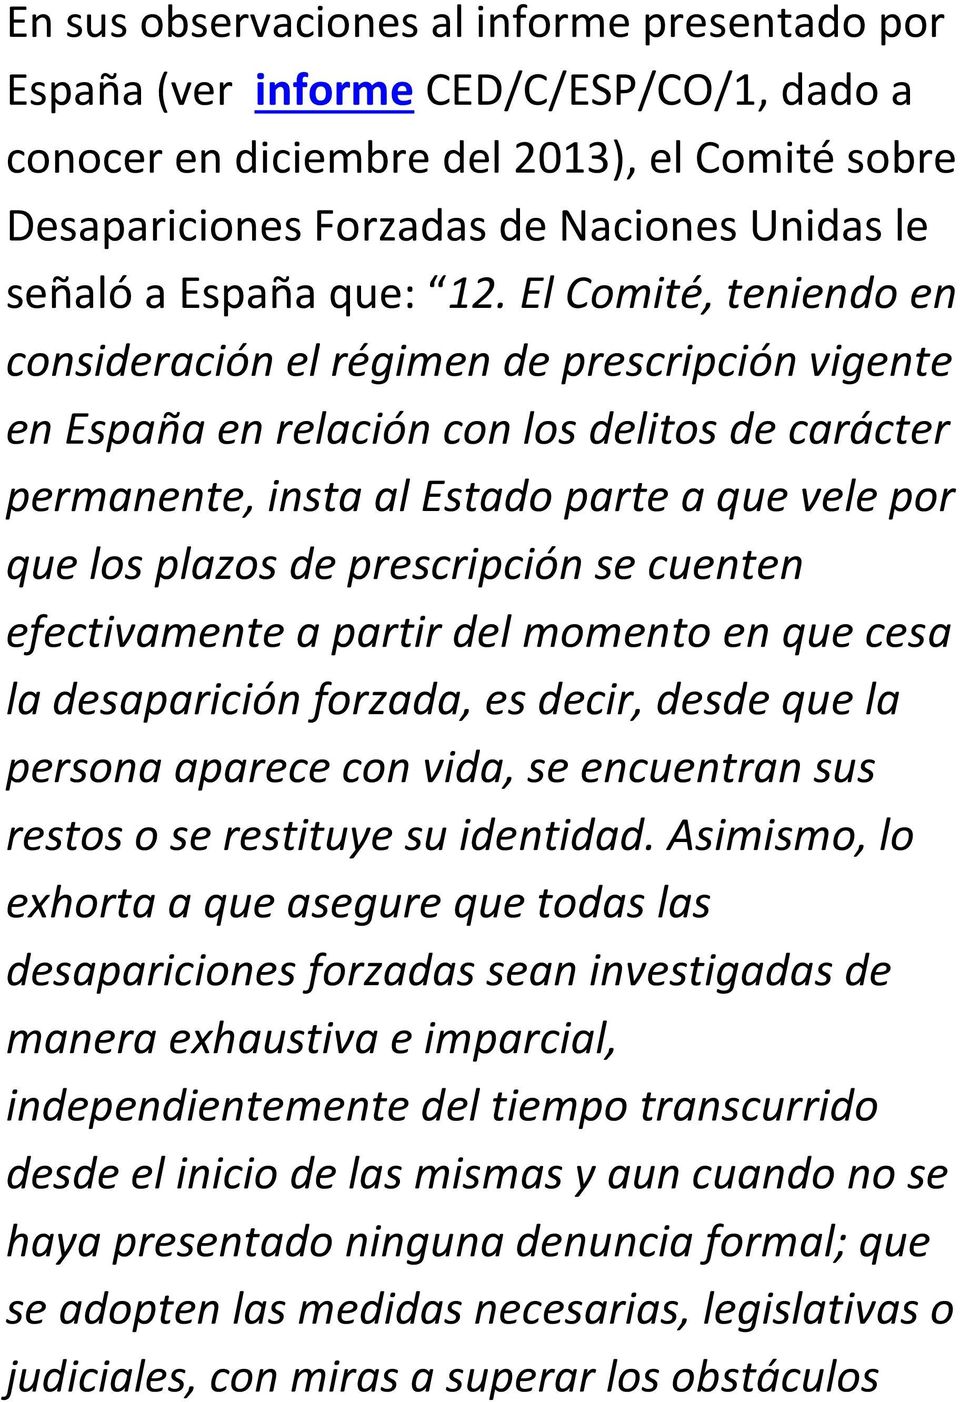 El Comité, teniendo en consideración el régimen de prescripción vigente en España en relación con los delitos de carácter permanente, insta al Estado parte a que vele por que los plazos de